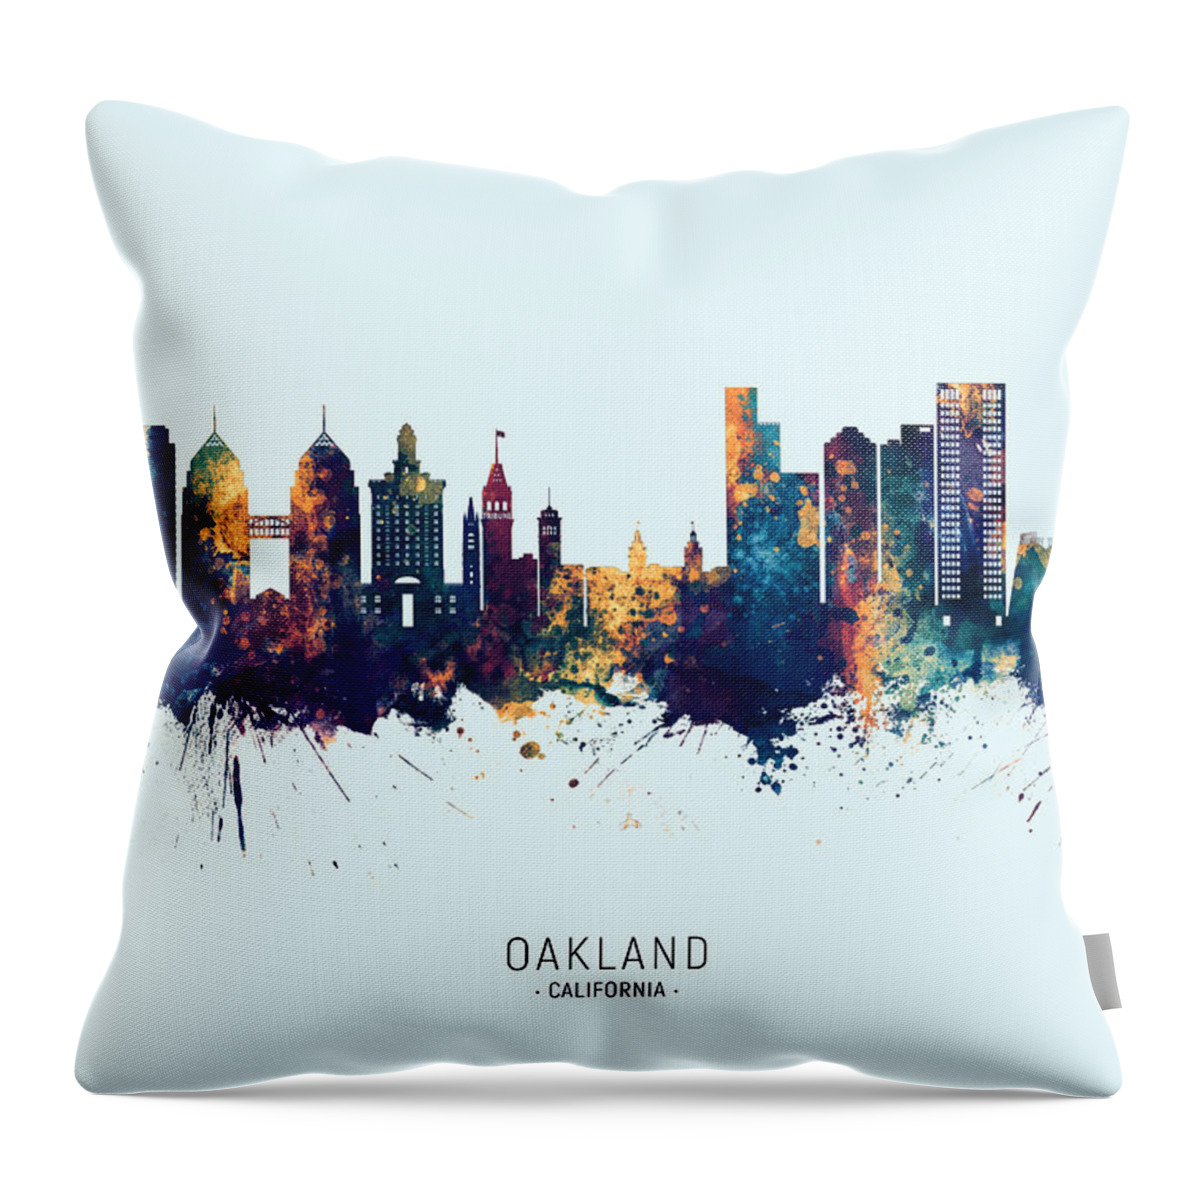 Oakland Throw Pillow featuring the digital art Oakland California Skyline #15 by Michael Tompsett